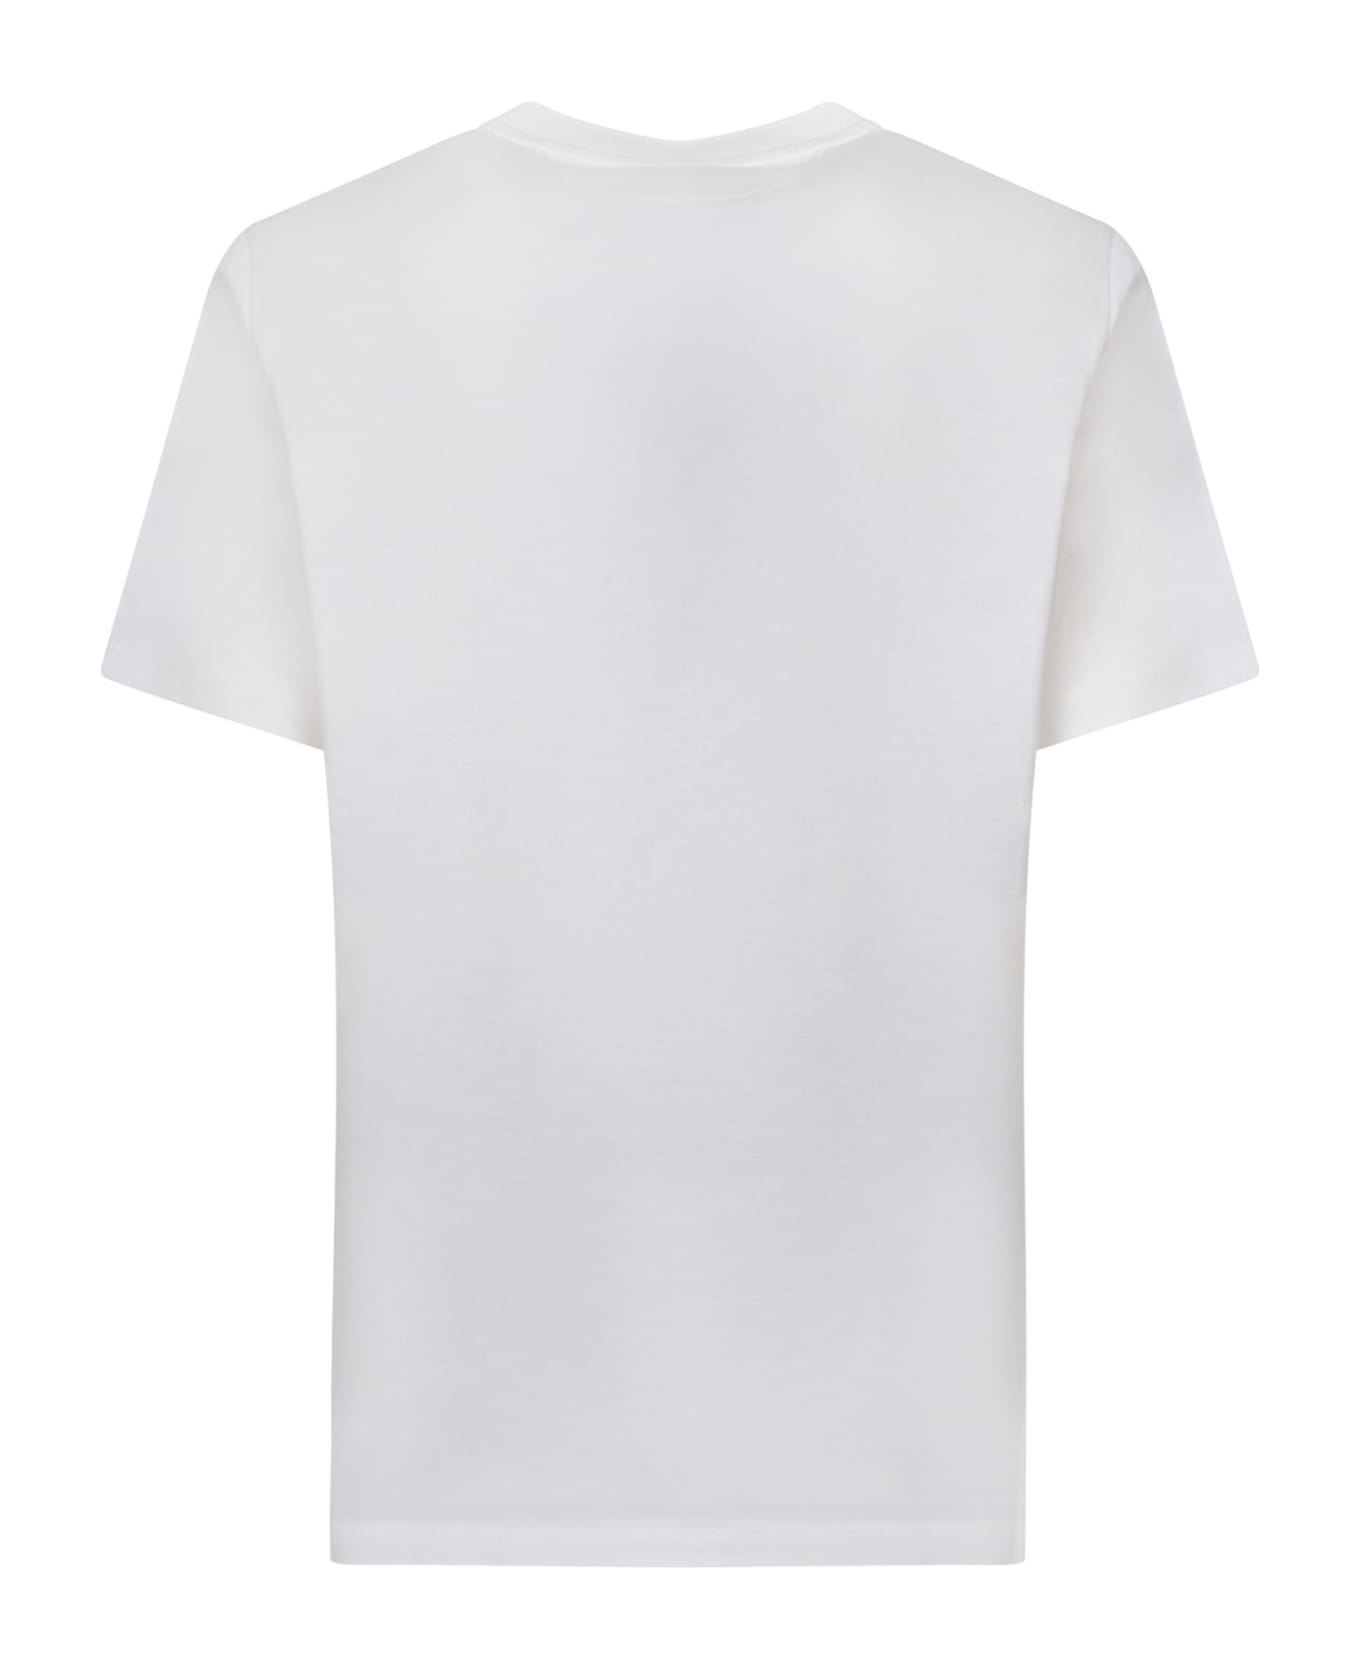 Paul Smith Pocket White T-shirt - White シャツ